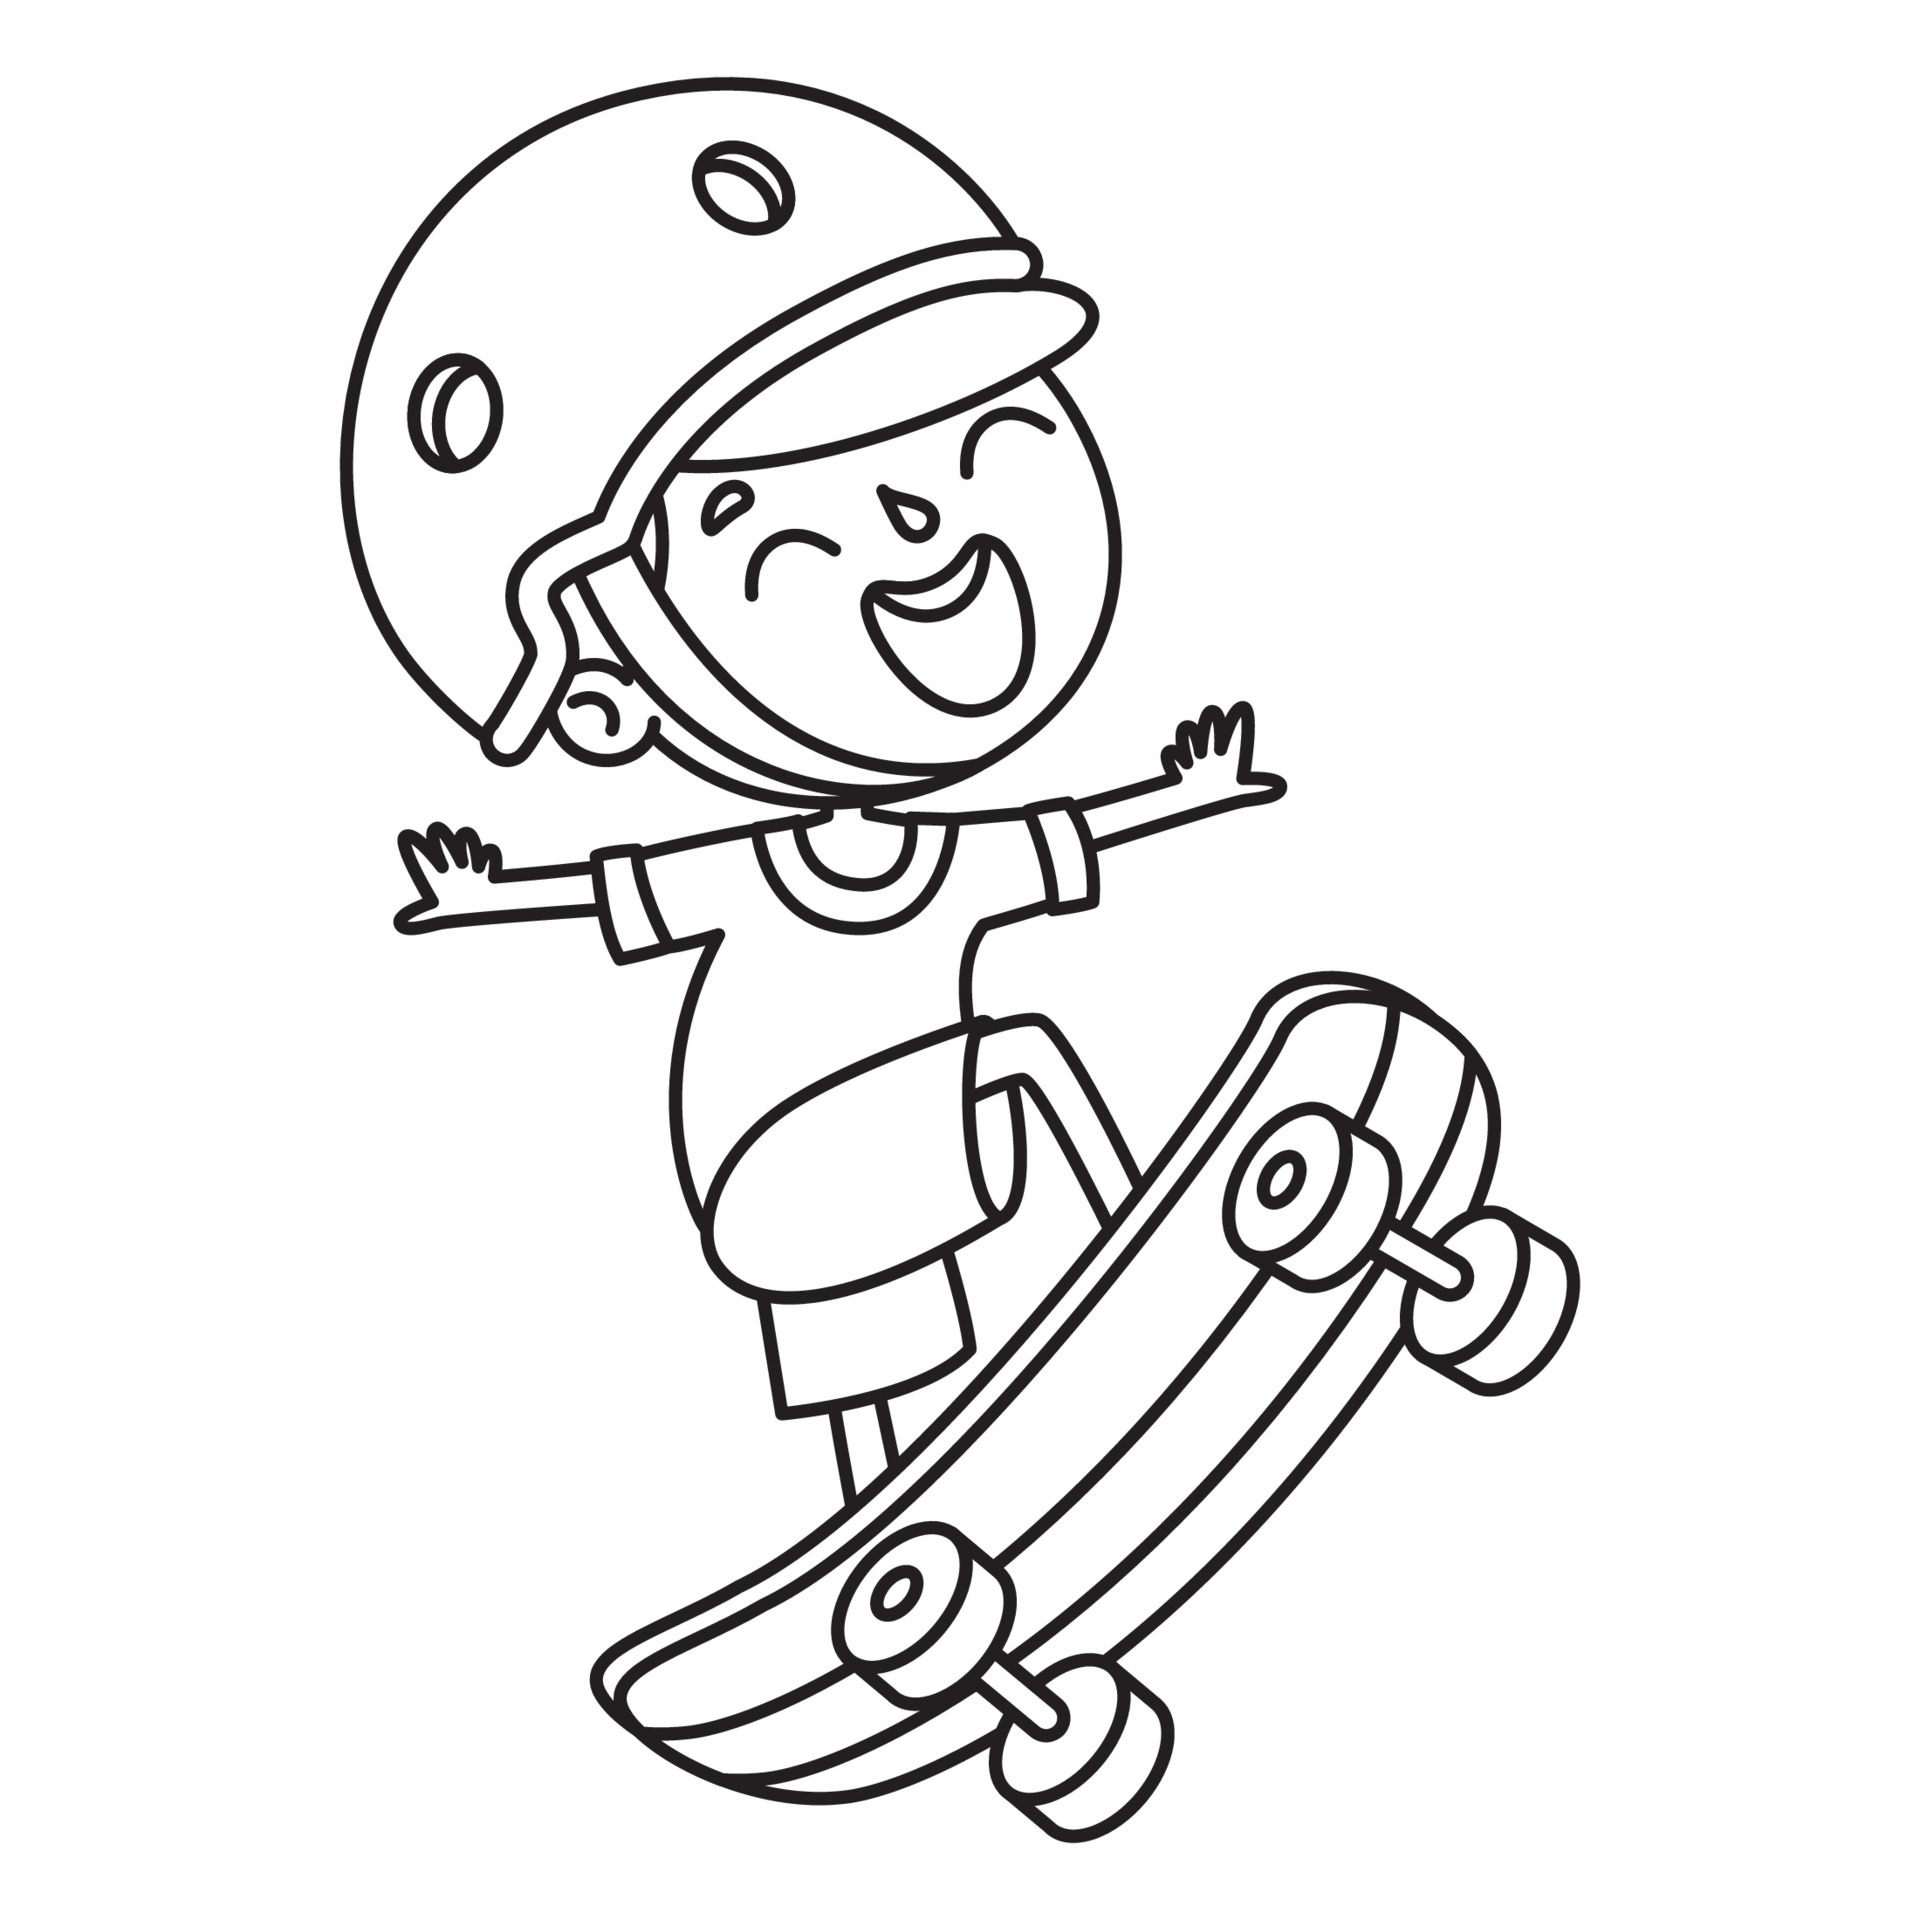 Menino feliz andando de skate. página do livro de colorir dos desenhos  animados para crianças.